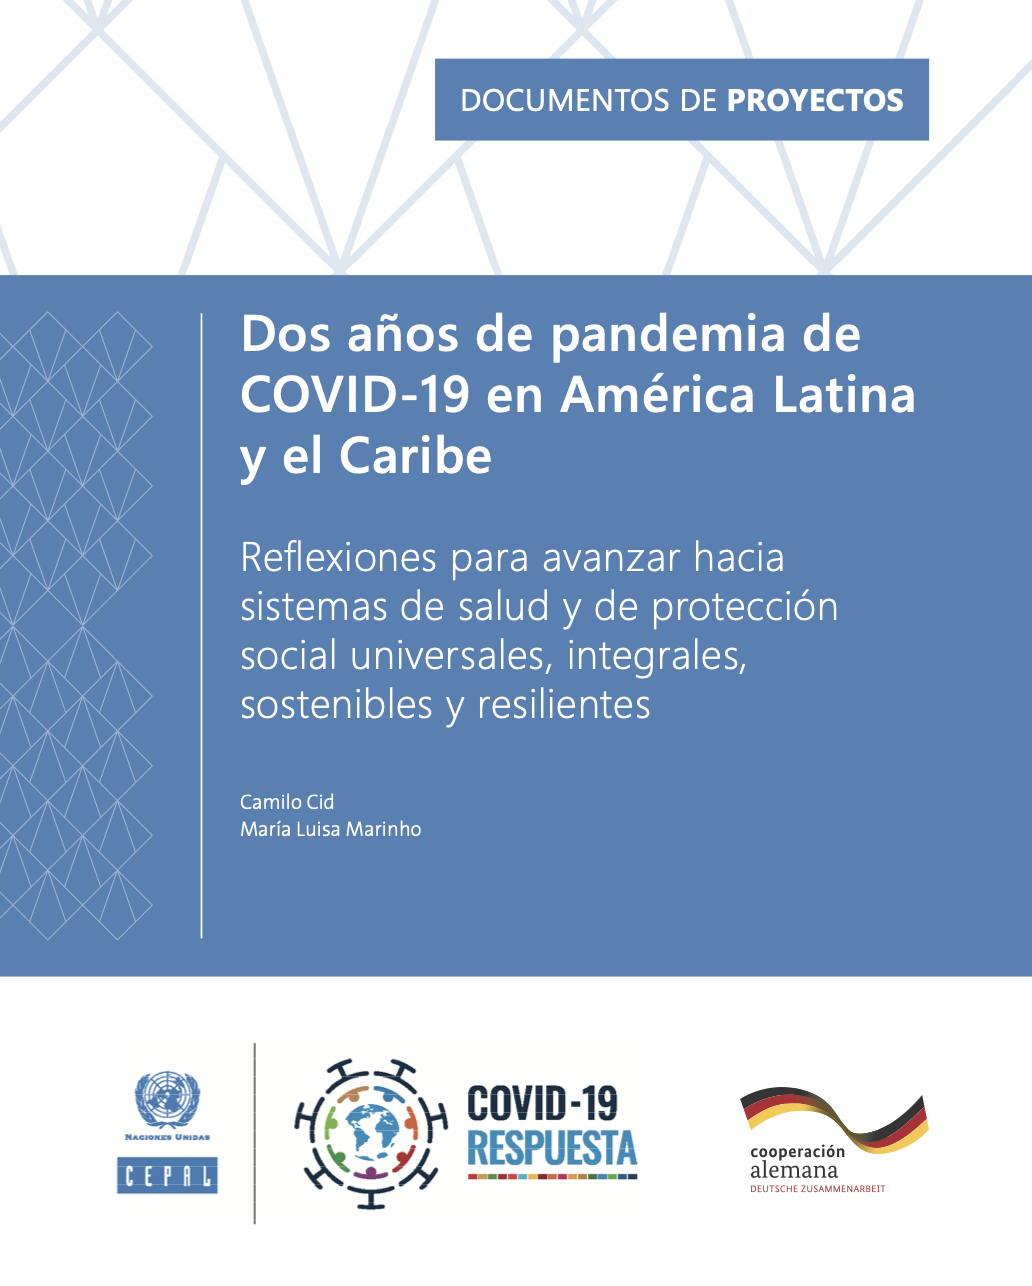 Dos años de pandemia de COVID-19 en América Latina y el Caribe: reflexiones para avanzar hacia sistemas de salud y de protección social universales, integrales, sostenibles y resilientes